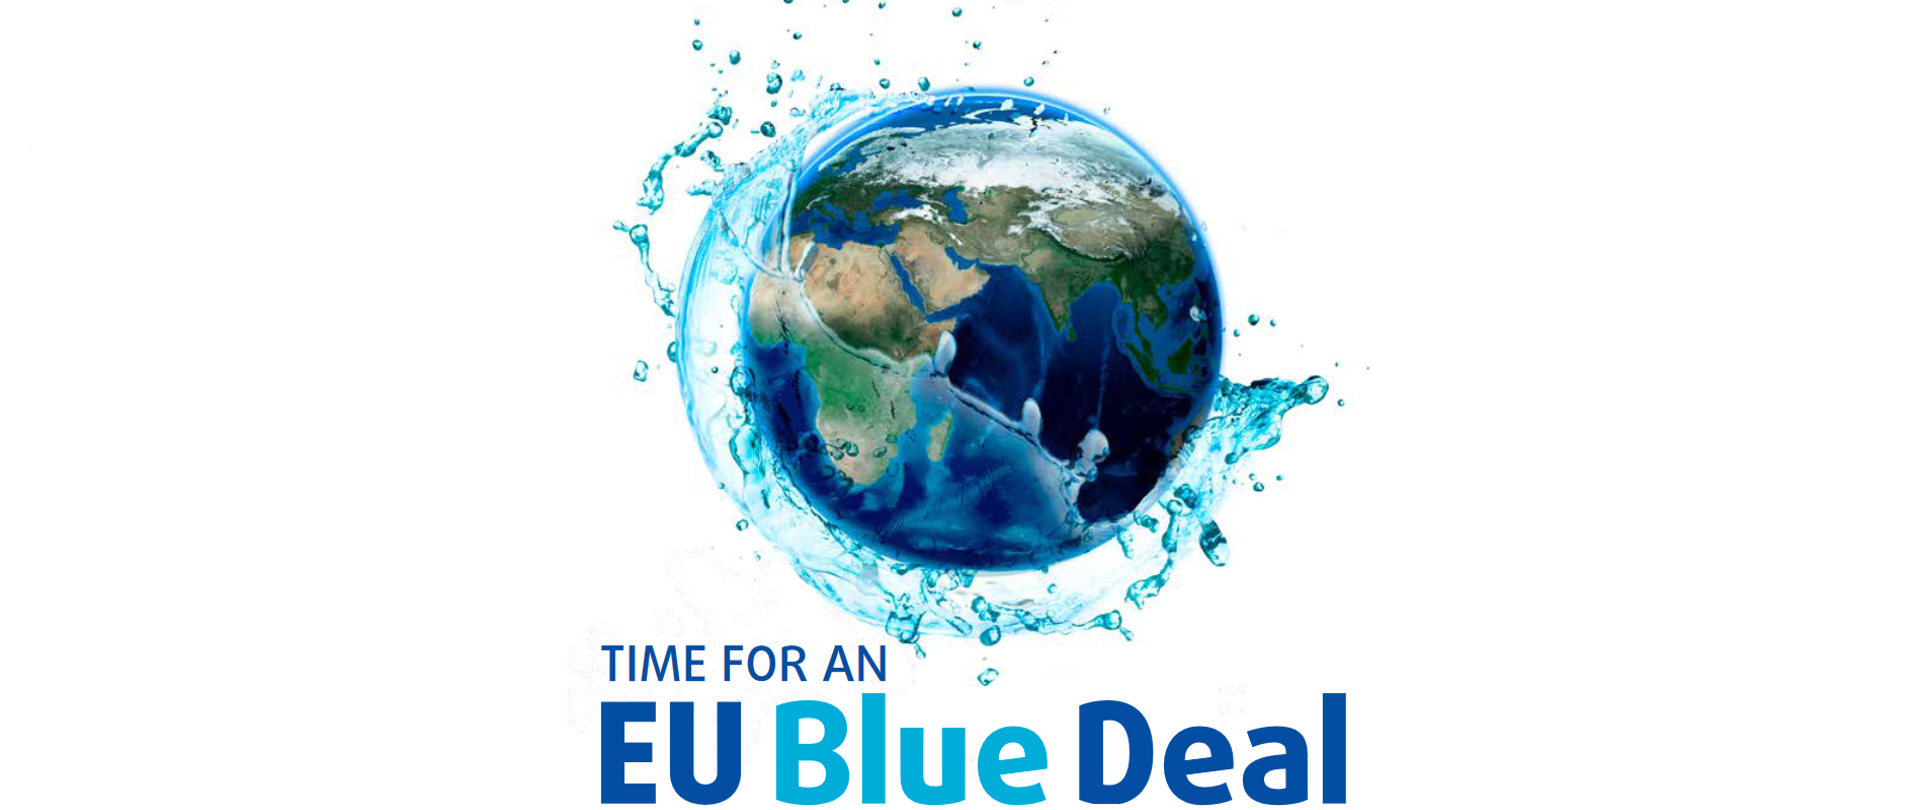 EU Blue Deal zdjęcie ziemi oblane wodą